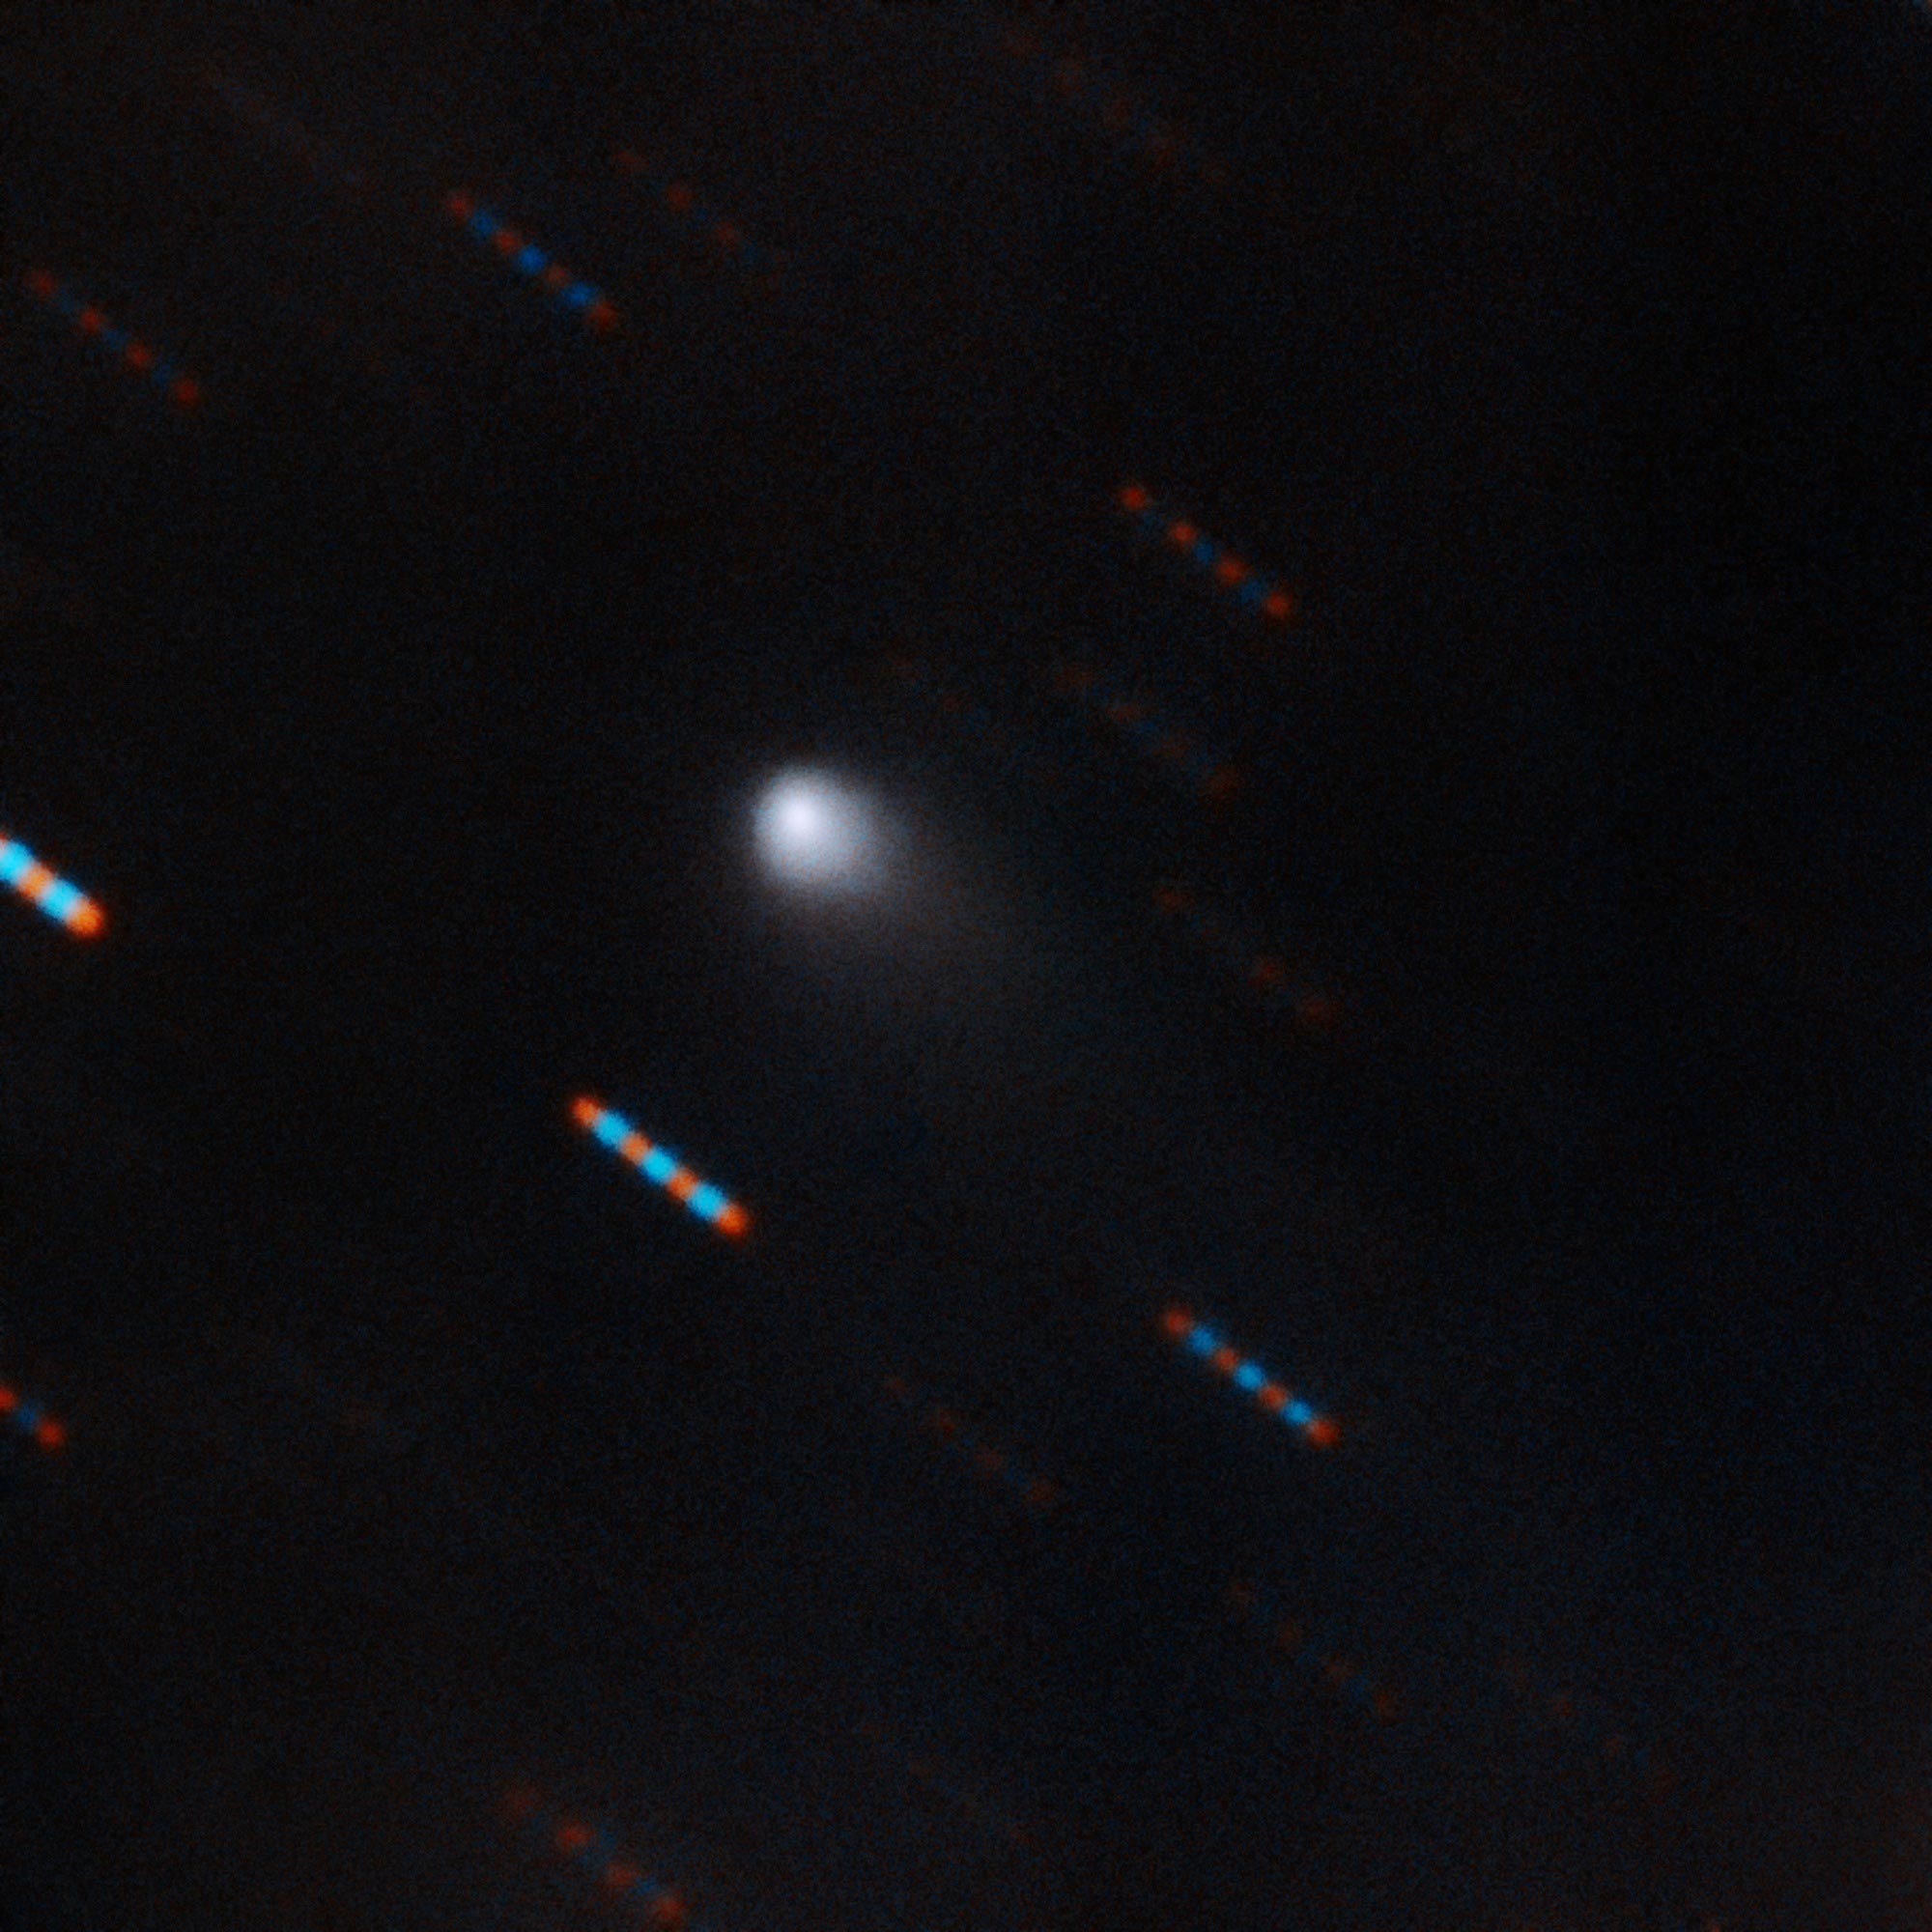 obrázek: Analýza ocasu mezihvězdné komety 2I/Borisov naznačuje přítomnost molekul vody